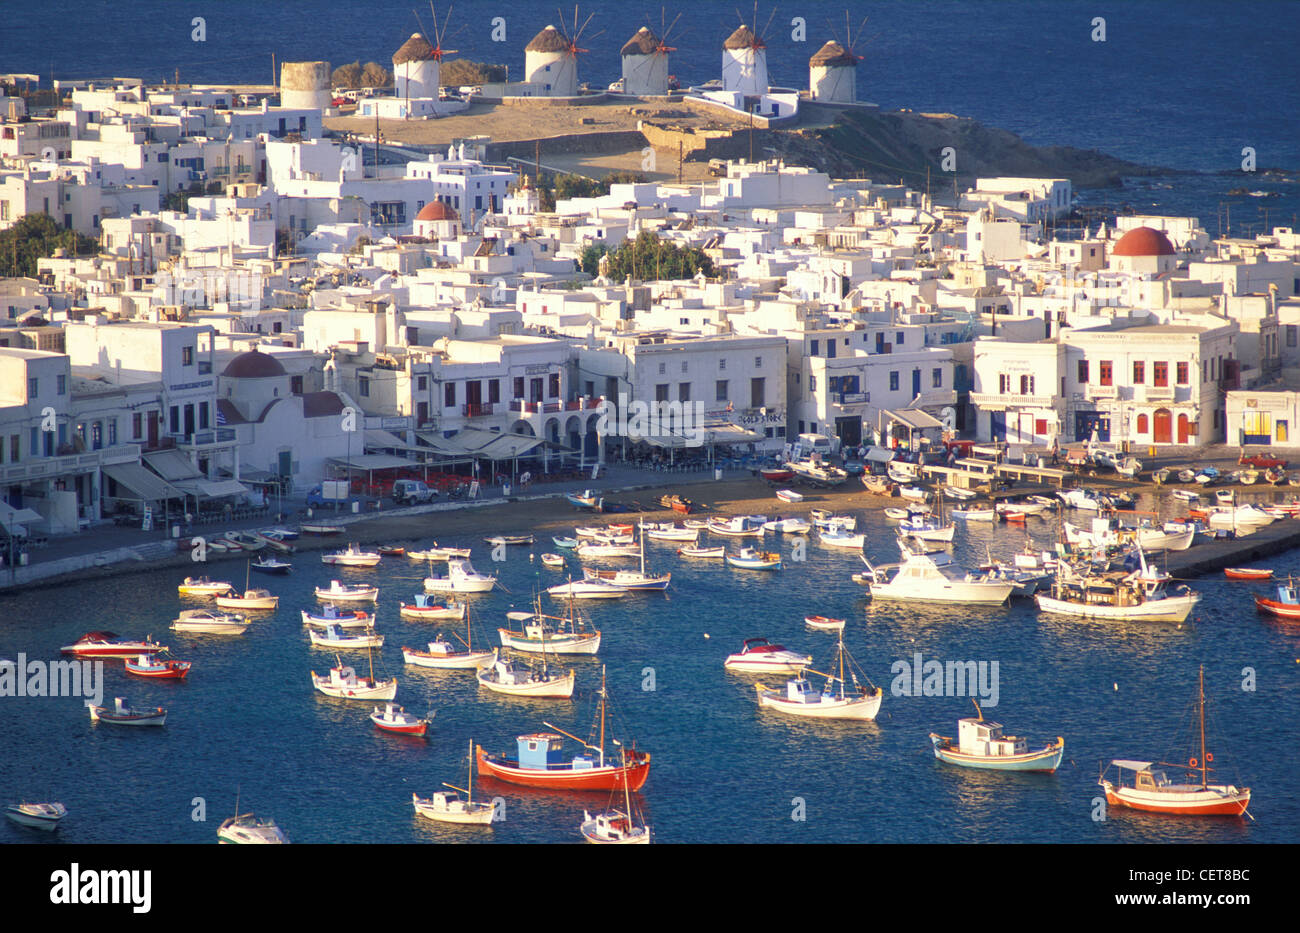 Mykonos, Cyclades Islands, Greece Stock Photo